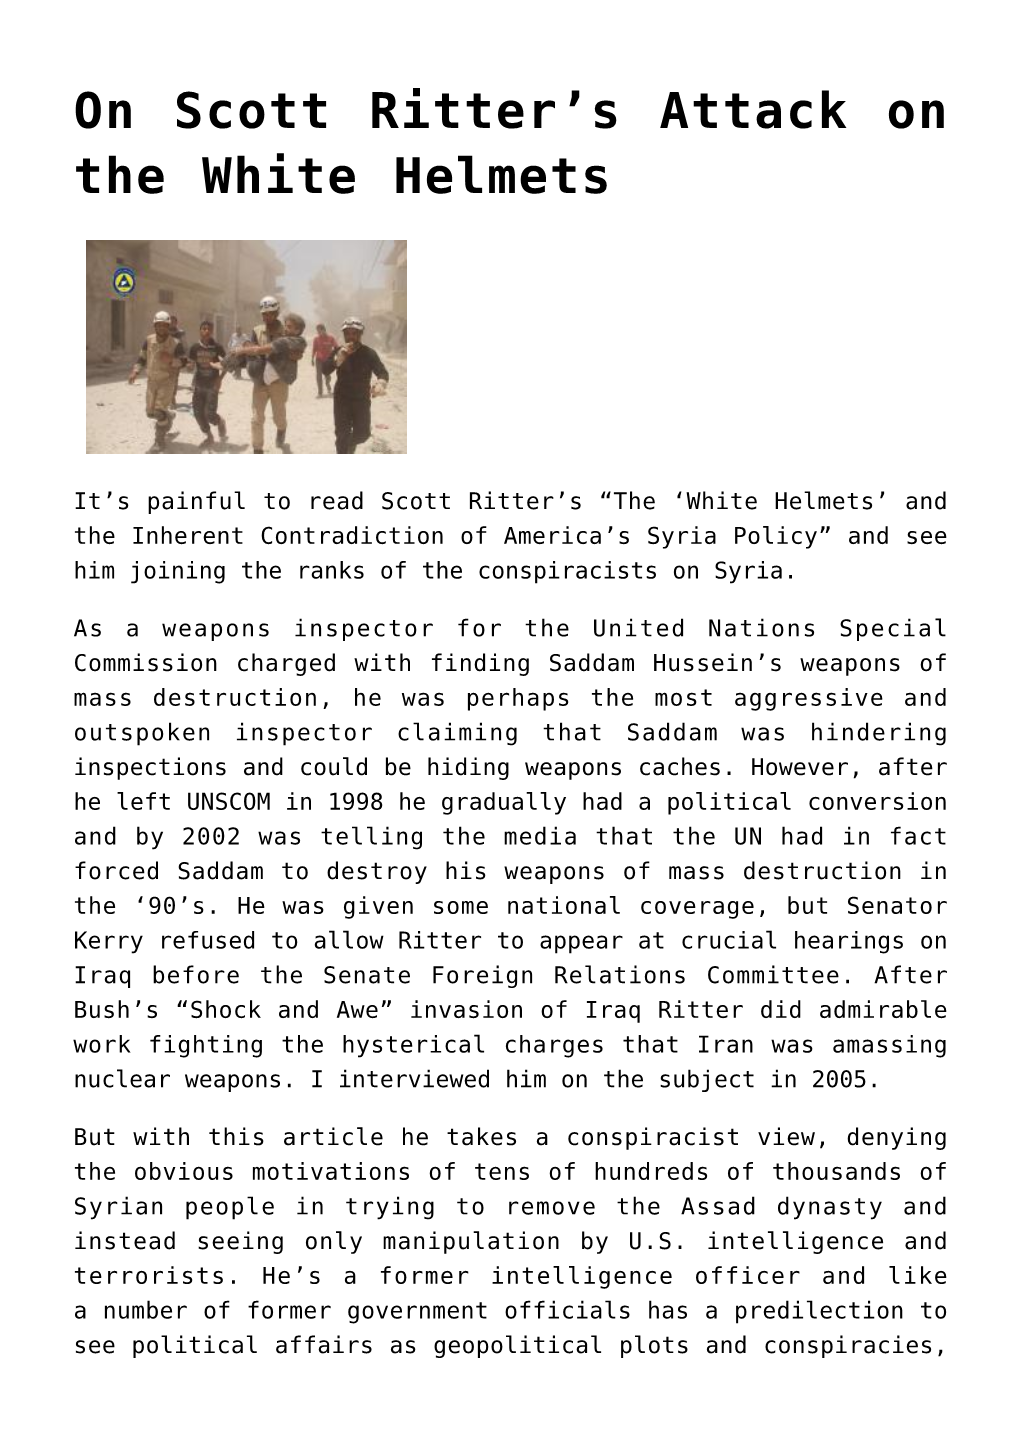 On Scott Ritter's Attack on the White Helmets